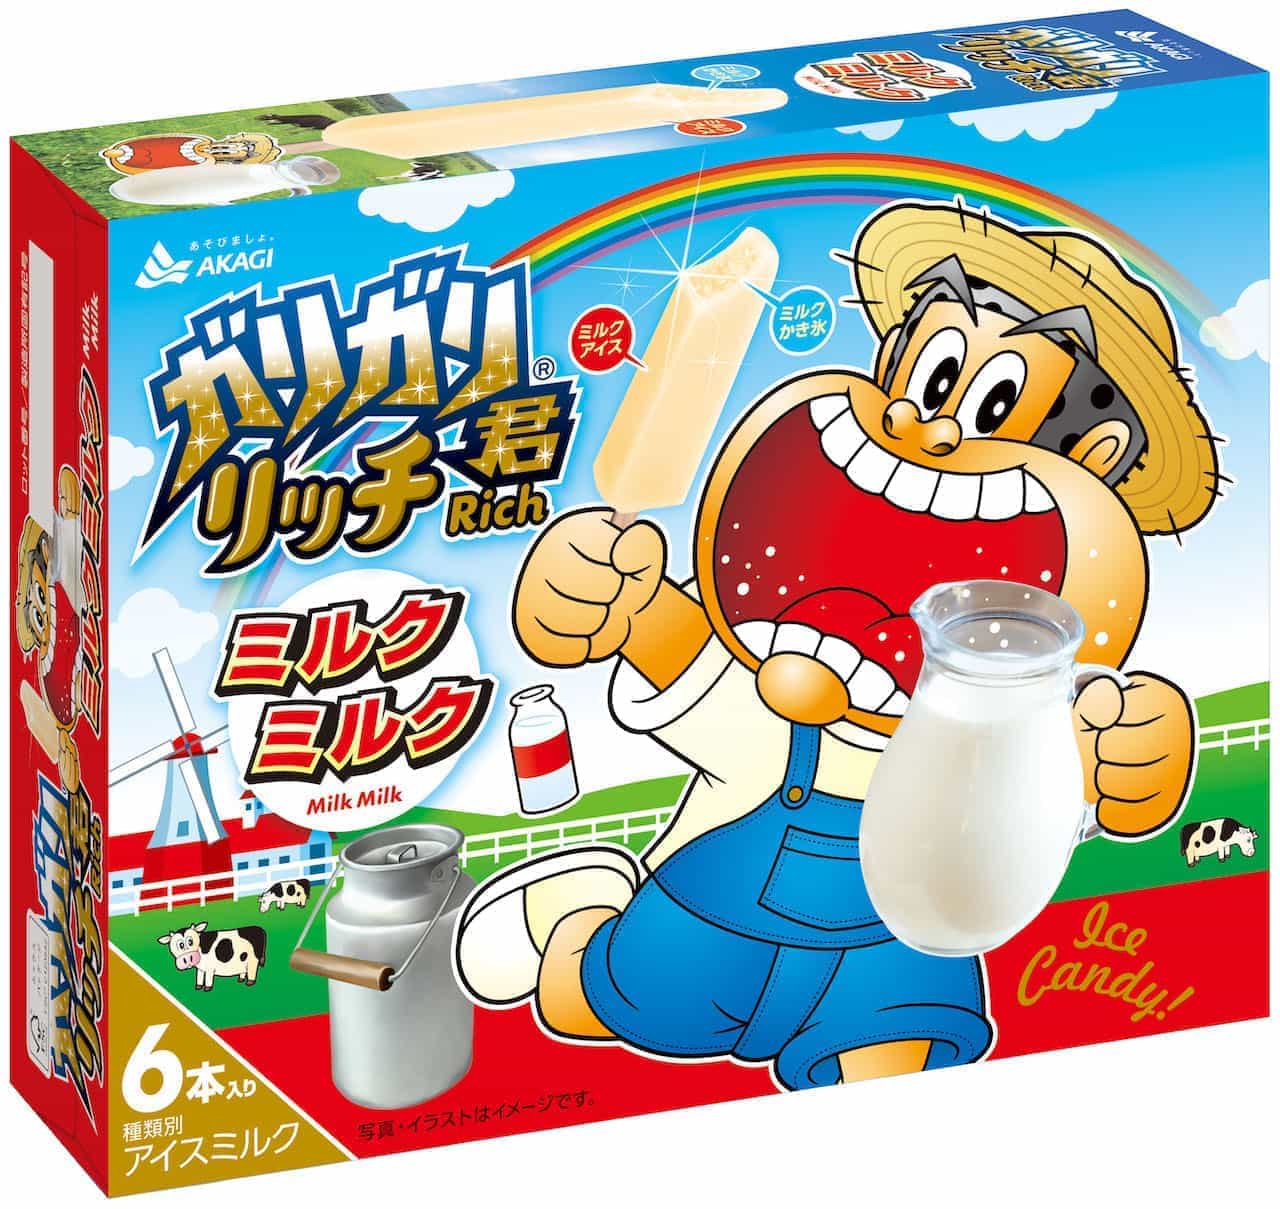 Garigari-kun Rich Milk Milk